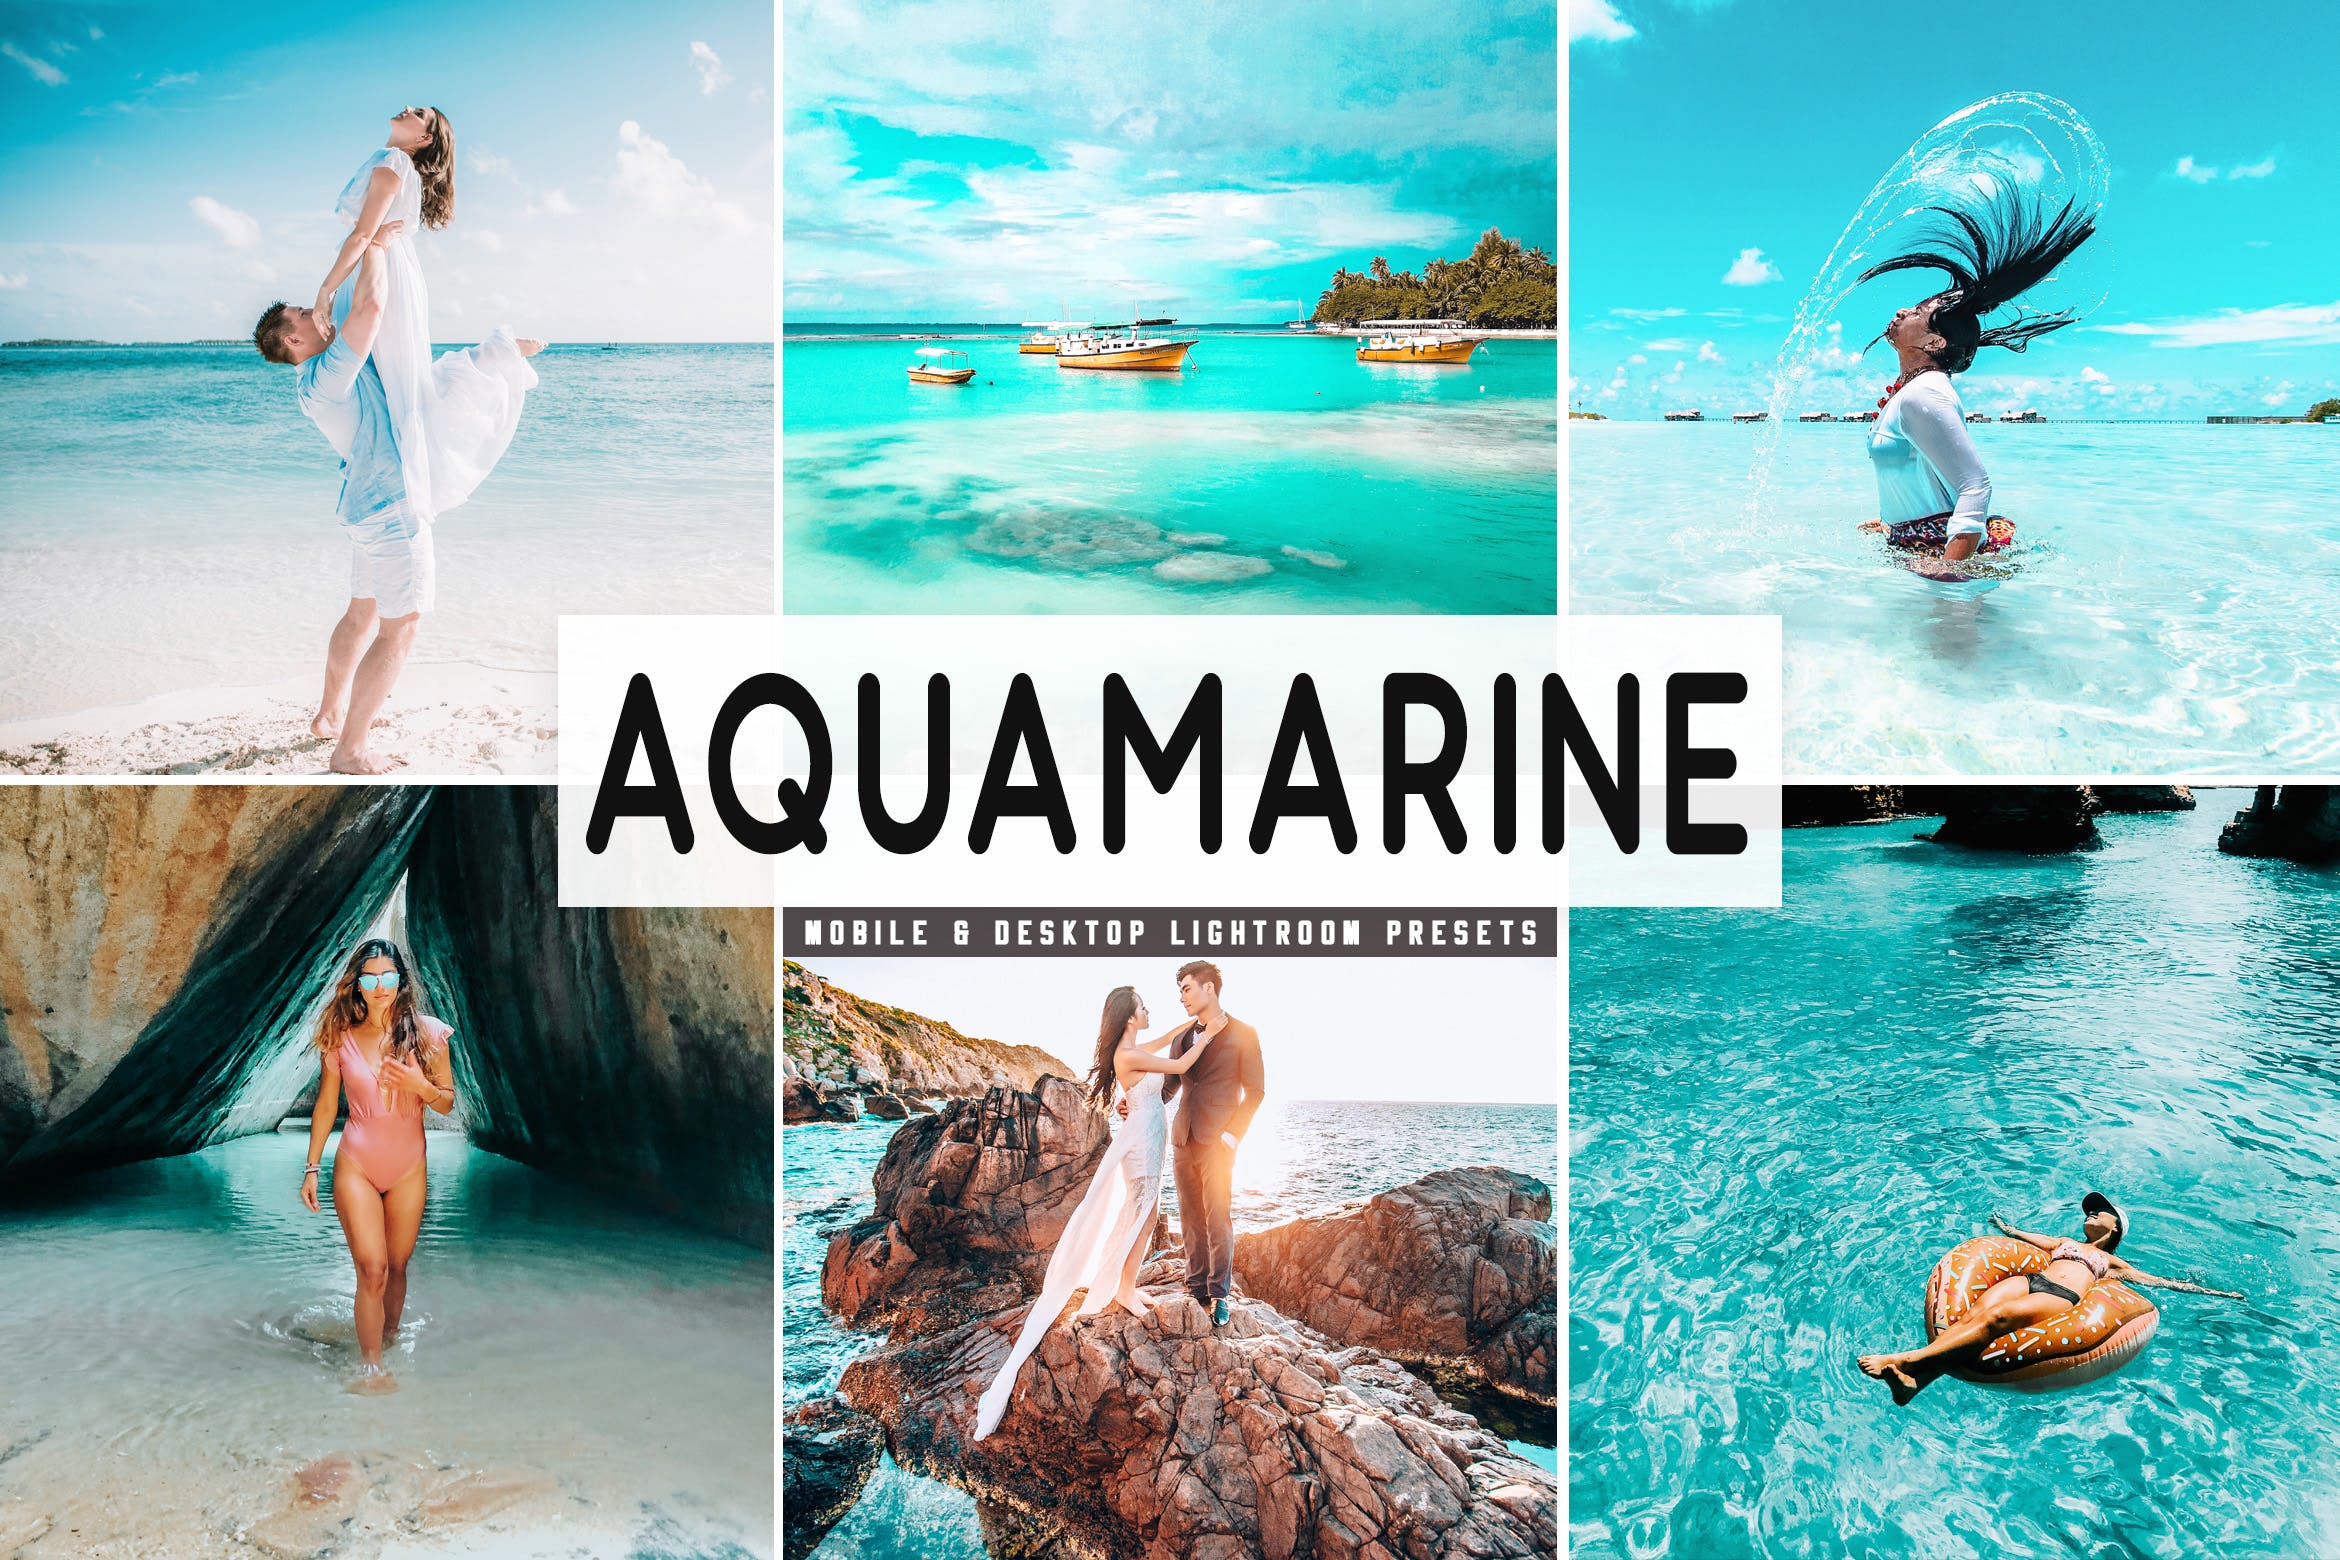 浅绿色&棕色色调照片处理大洋岛精选LR预设 Aquamarine Mobile & Desktop Lightroom Presets插图